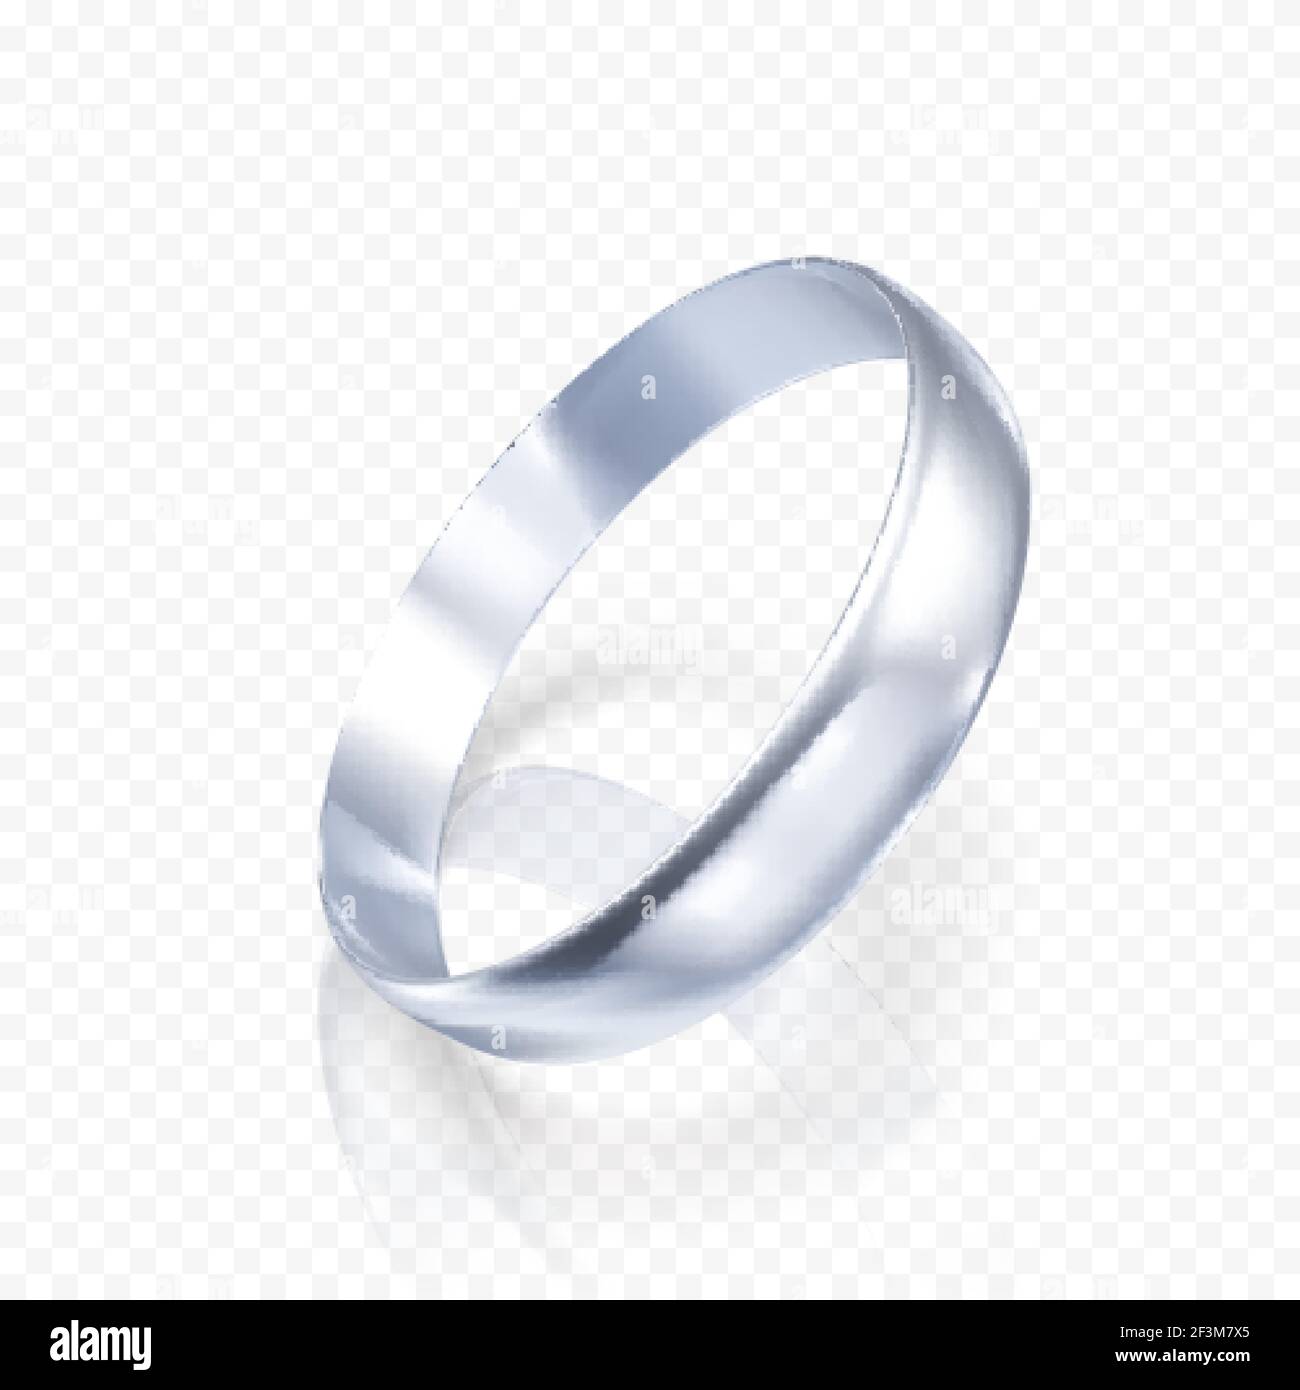 Anello realistico in oro bianco o argento. Rendering 3D dell'anello in platino con ombre e riflessi. Illustrazione vettoriale isolata su sfondo trasparente Illustrazione Vettoriale